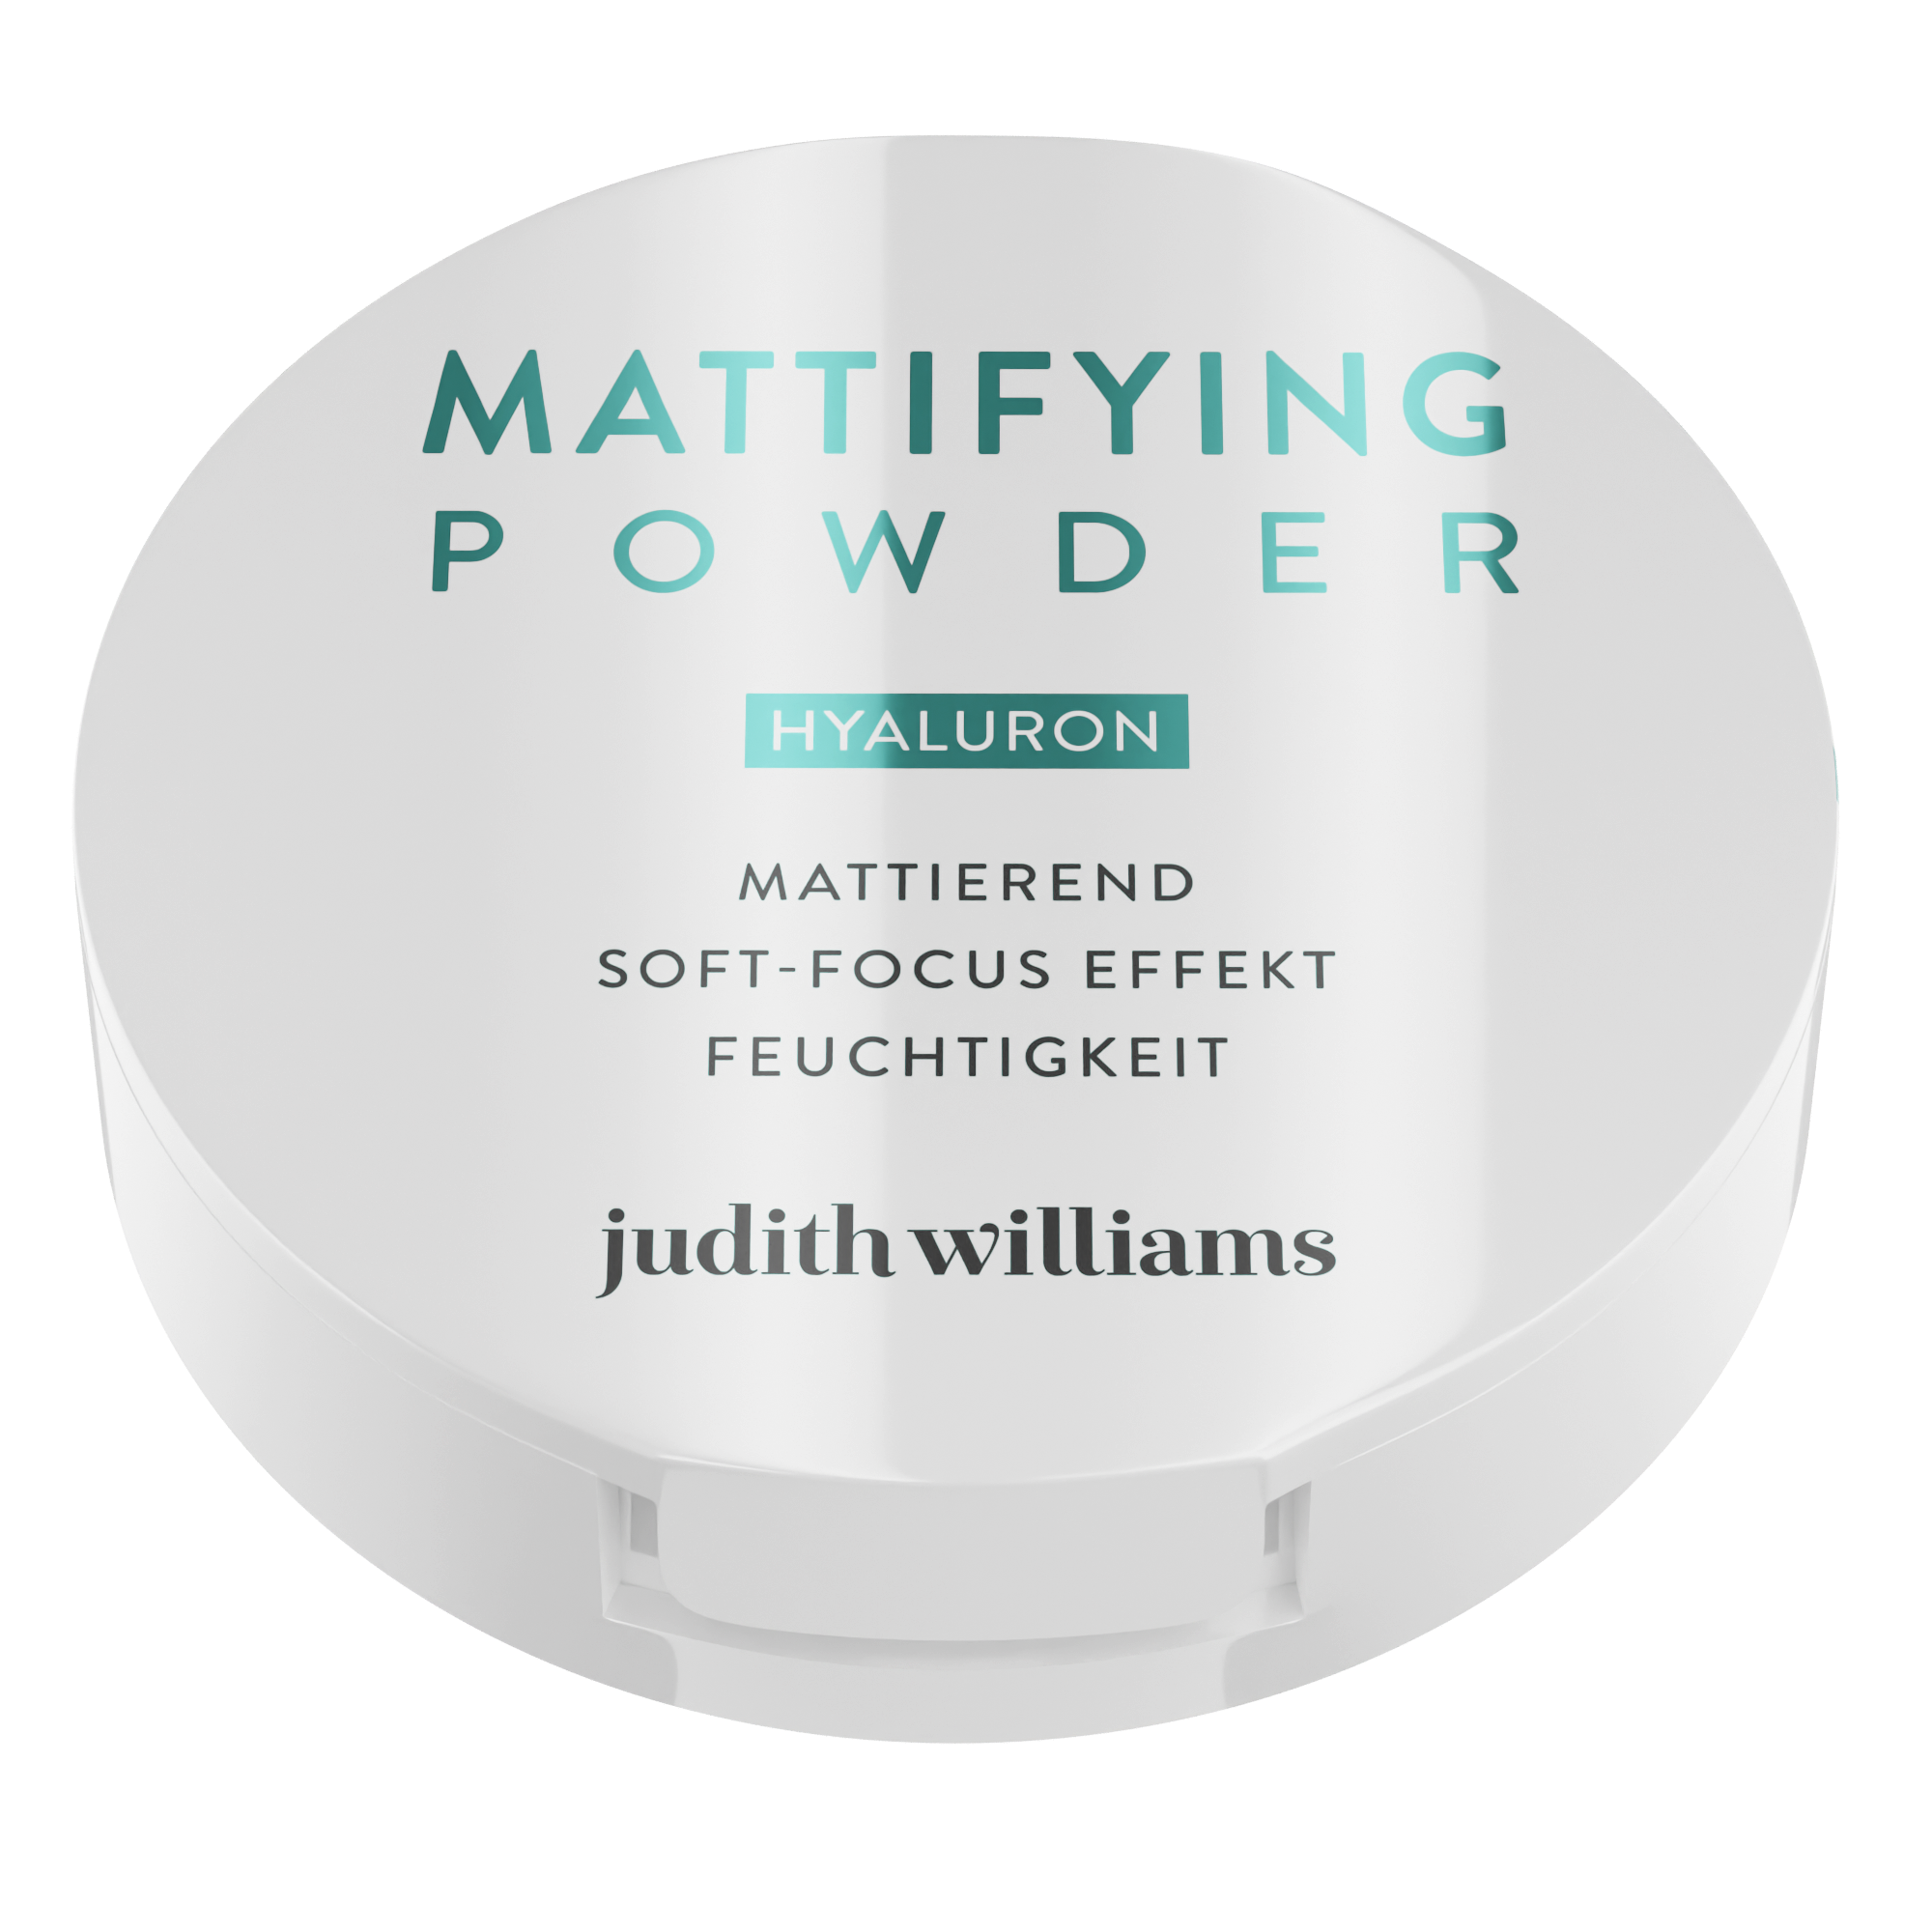 Make-up Mattifying Powder